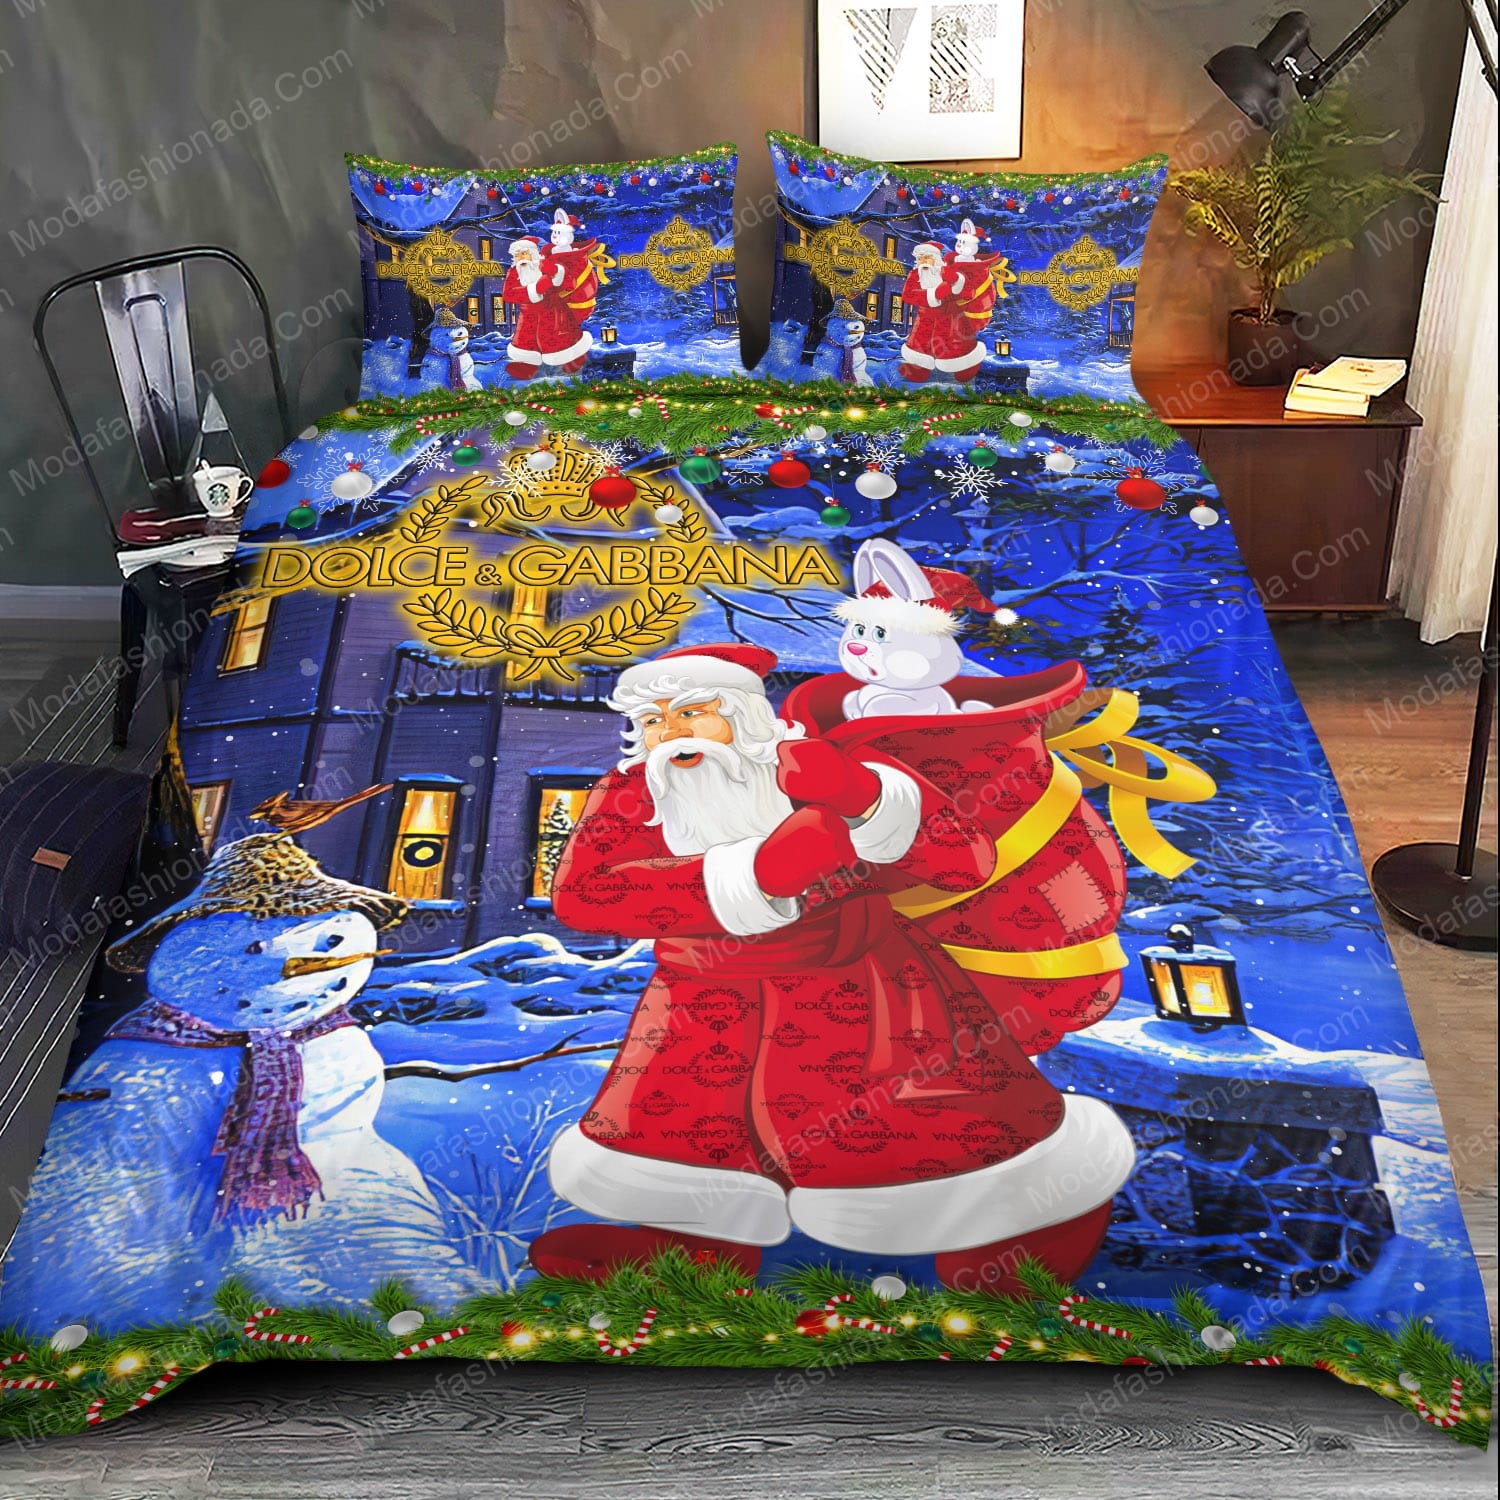 Buy Santa Claus Dolce & Gabbana Merry Christmas Bedding Sets Bed Sets,  Bedroom Sets, Comforter Sets, Duvet Cover, Bedspread